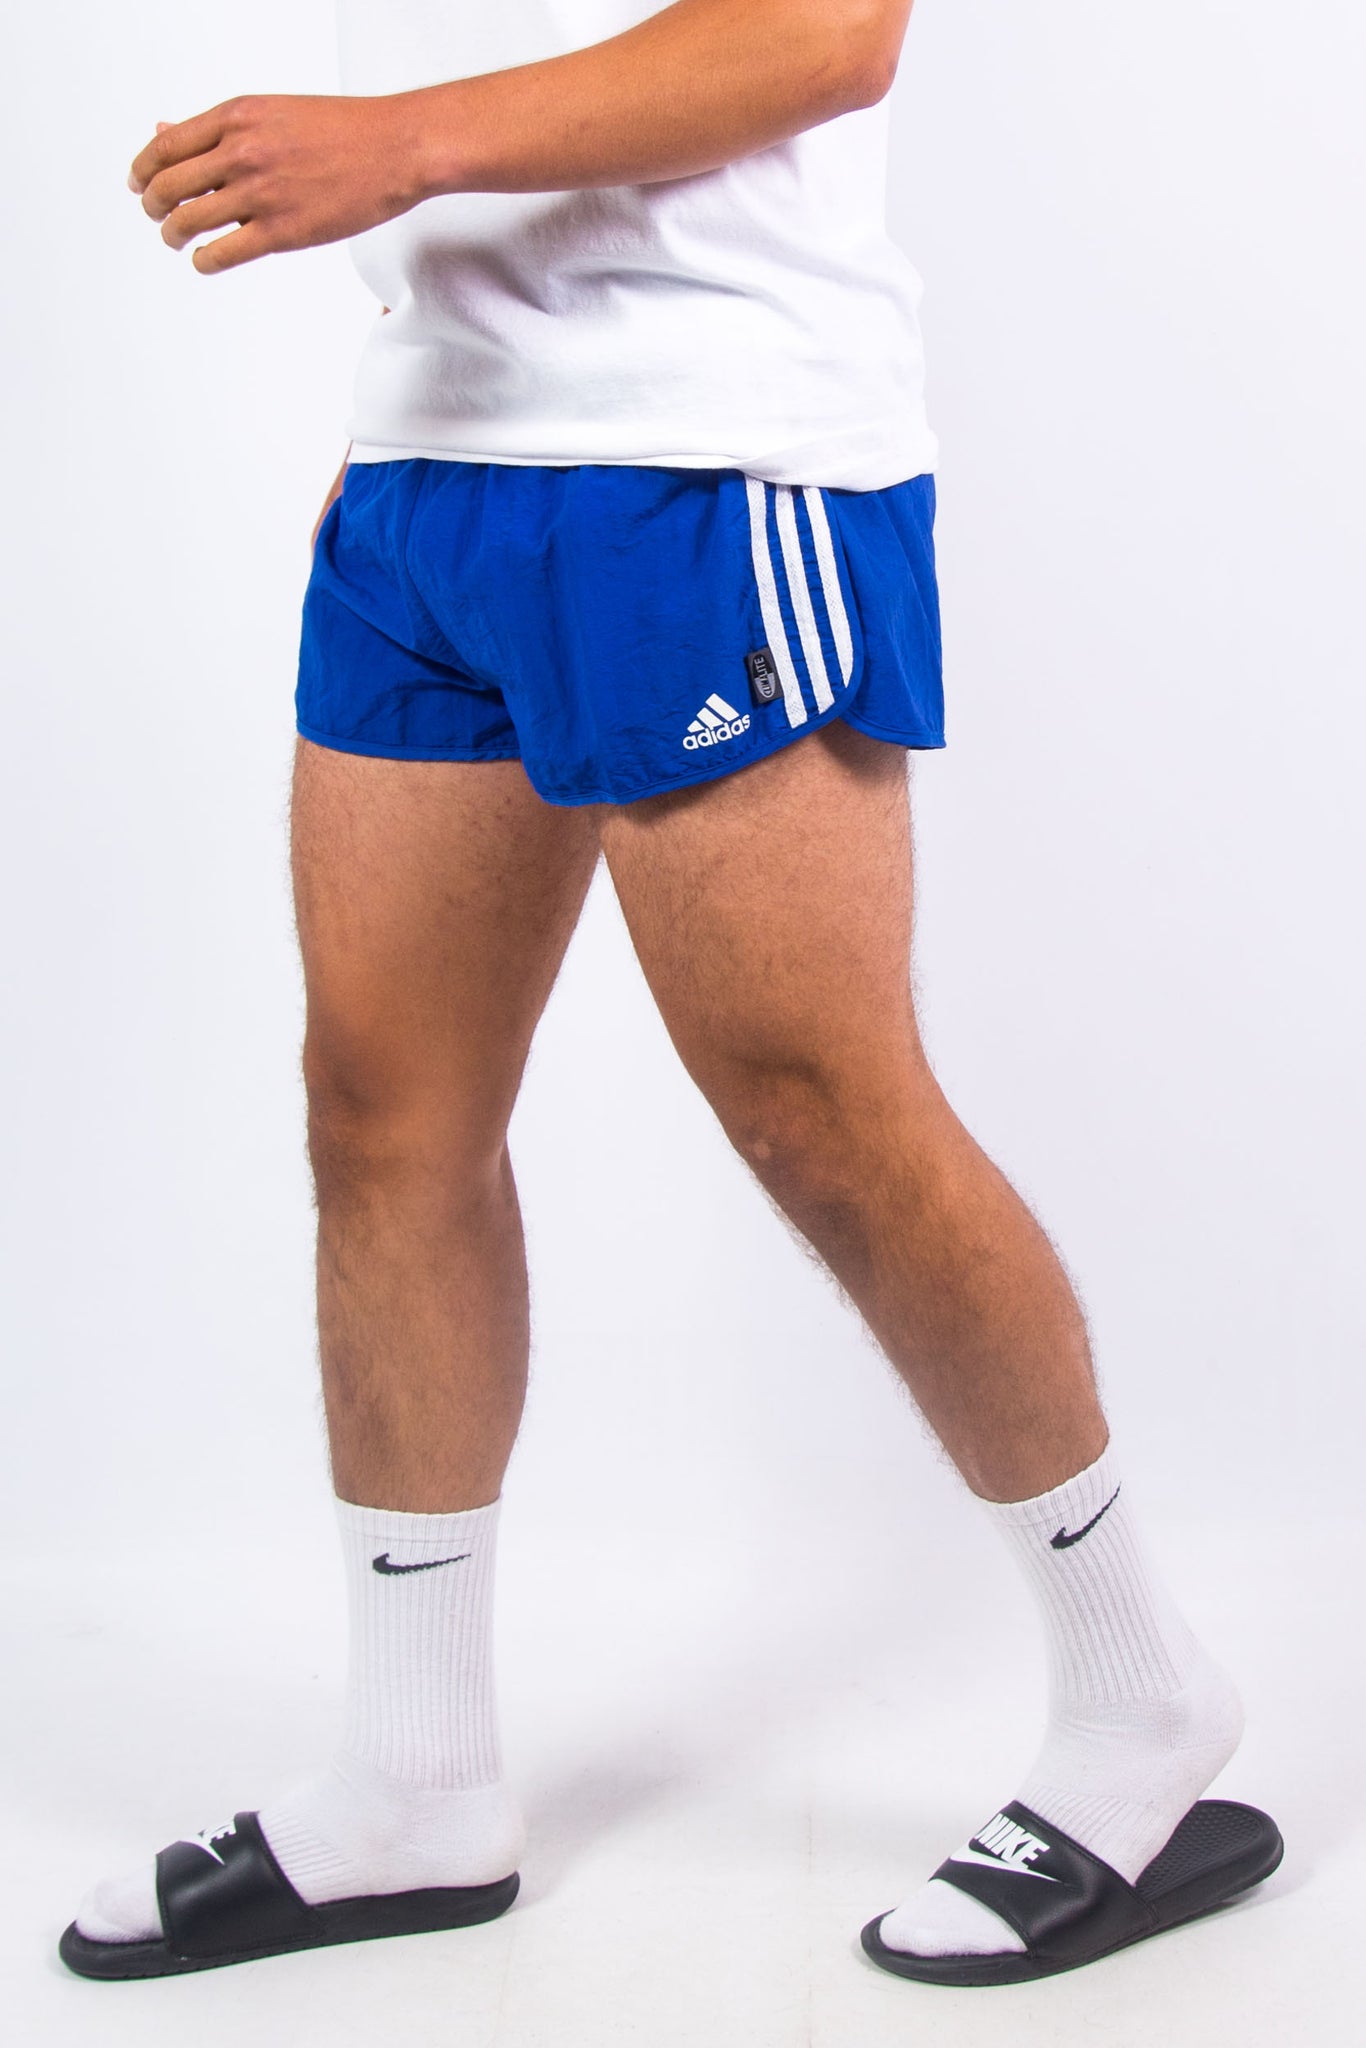 retro adidas running shorts